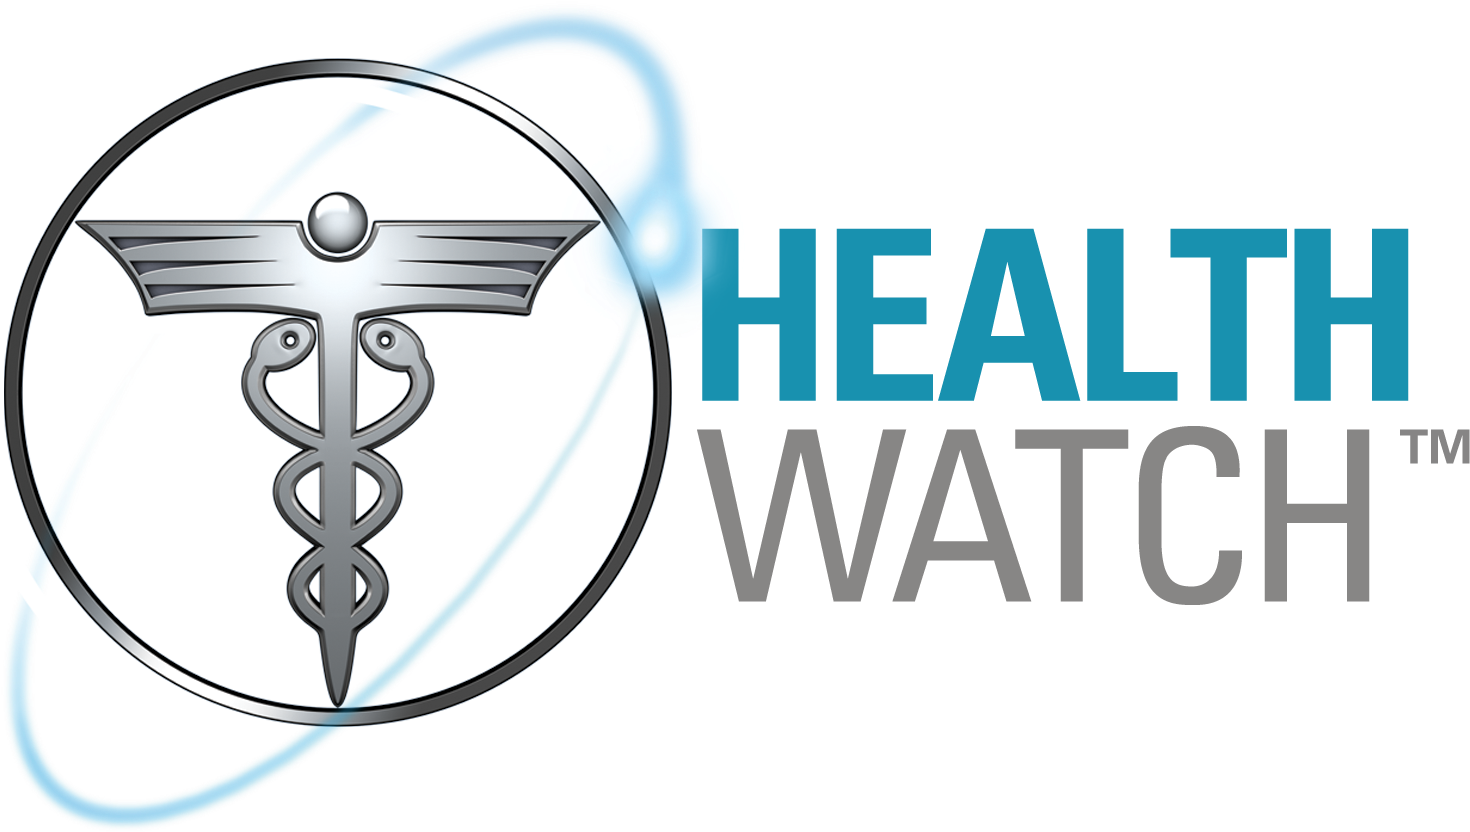 Cbs Healthwatch (1788x1044), Png Download